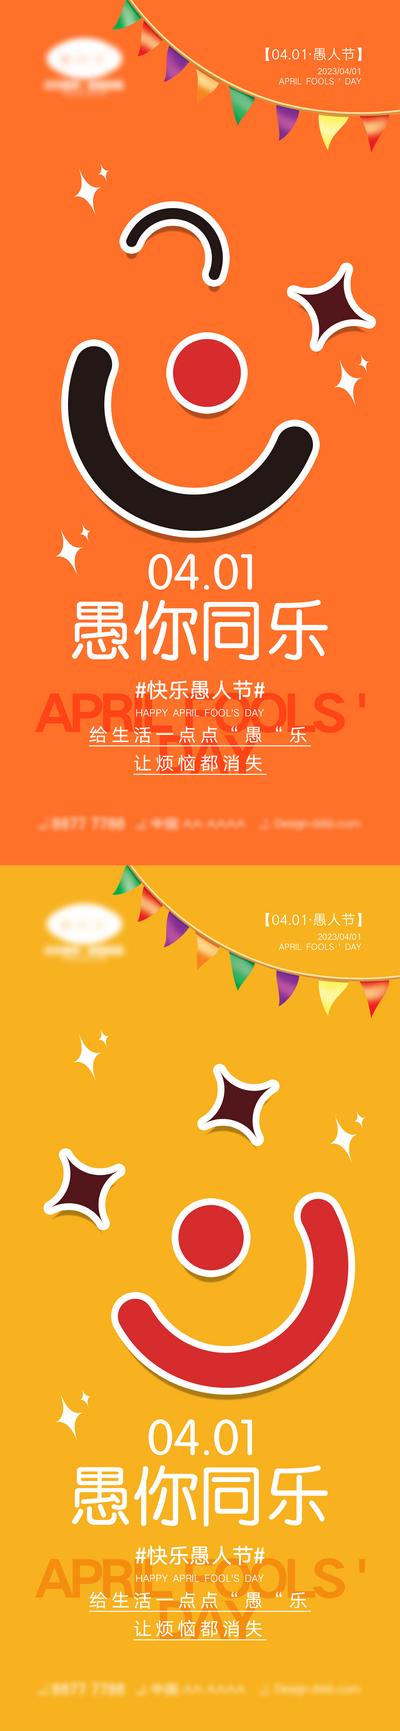 南门网 海报 愚人节 4.1 小丑 兔子 快乐 简约 公历节日